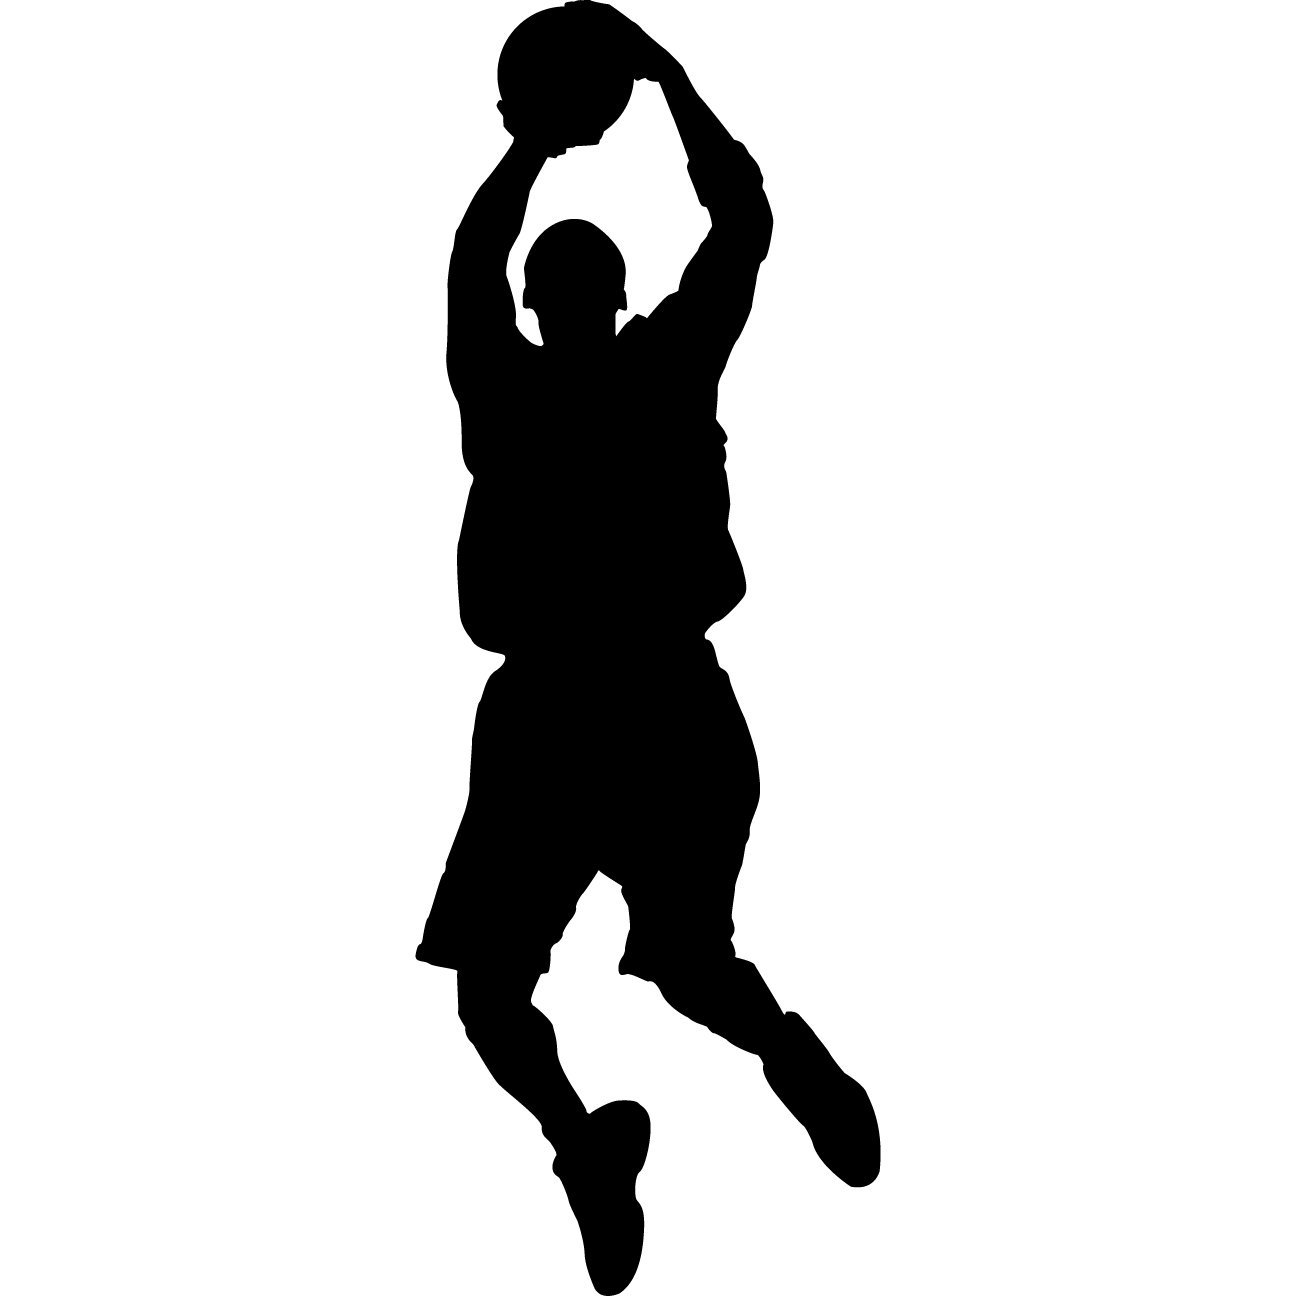 Silhouette Basketball Player Shooting